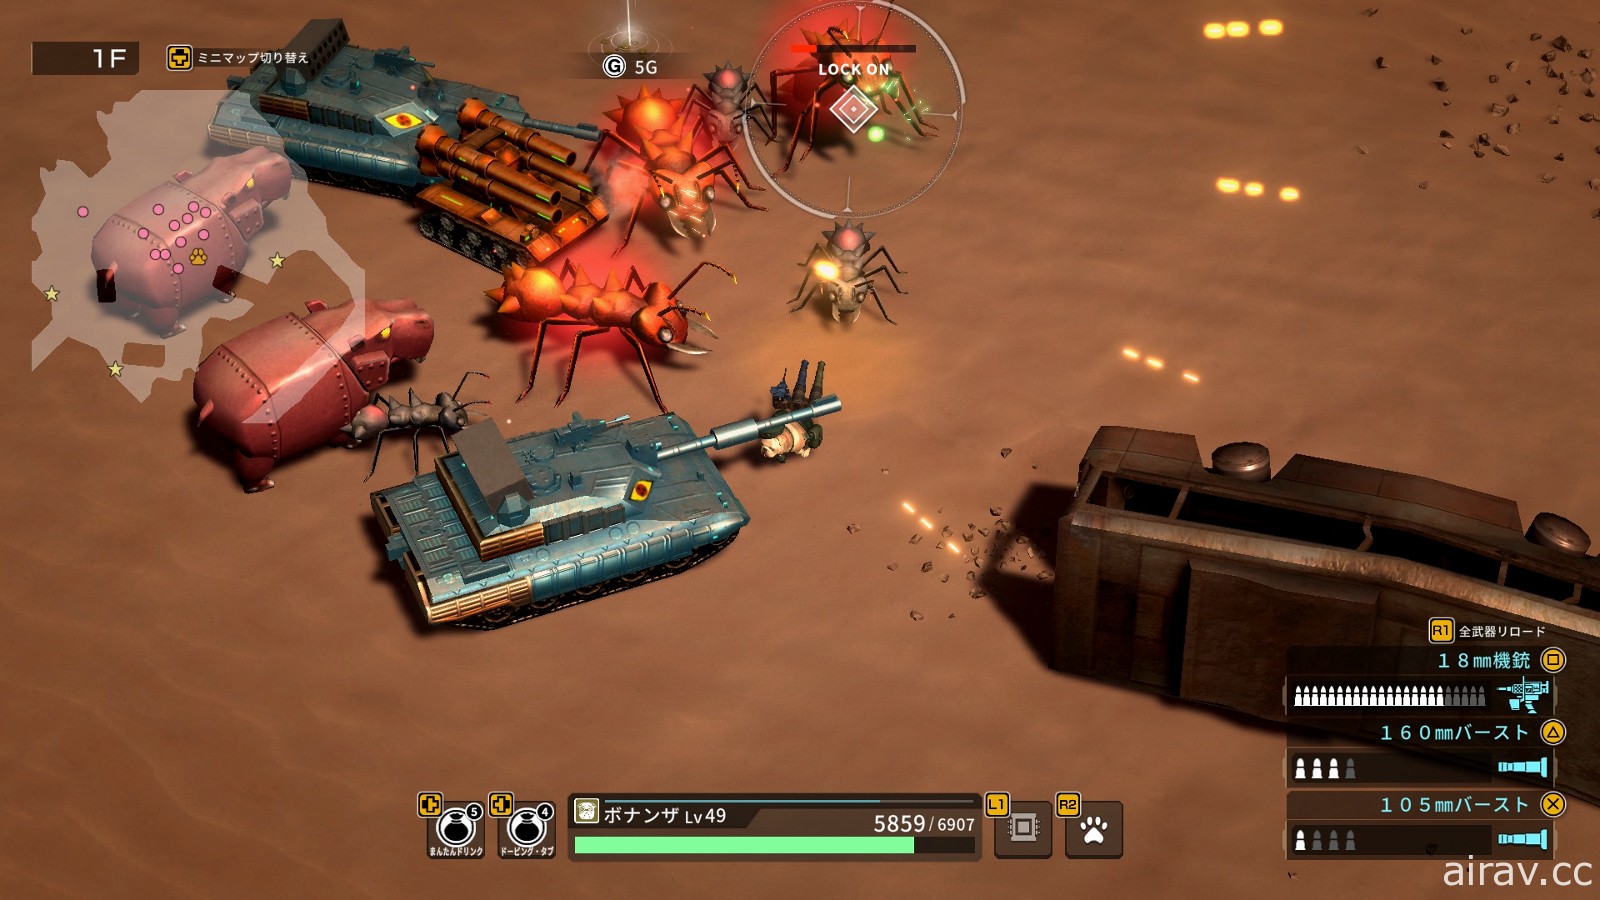 《坦克战狗》主机版将在 4/8 柴犬之日推出 公布正式版游戏追加要素介绍